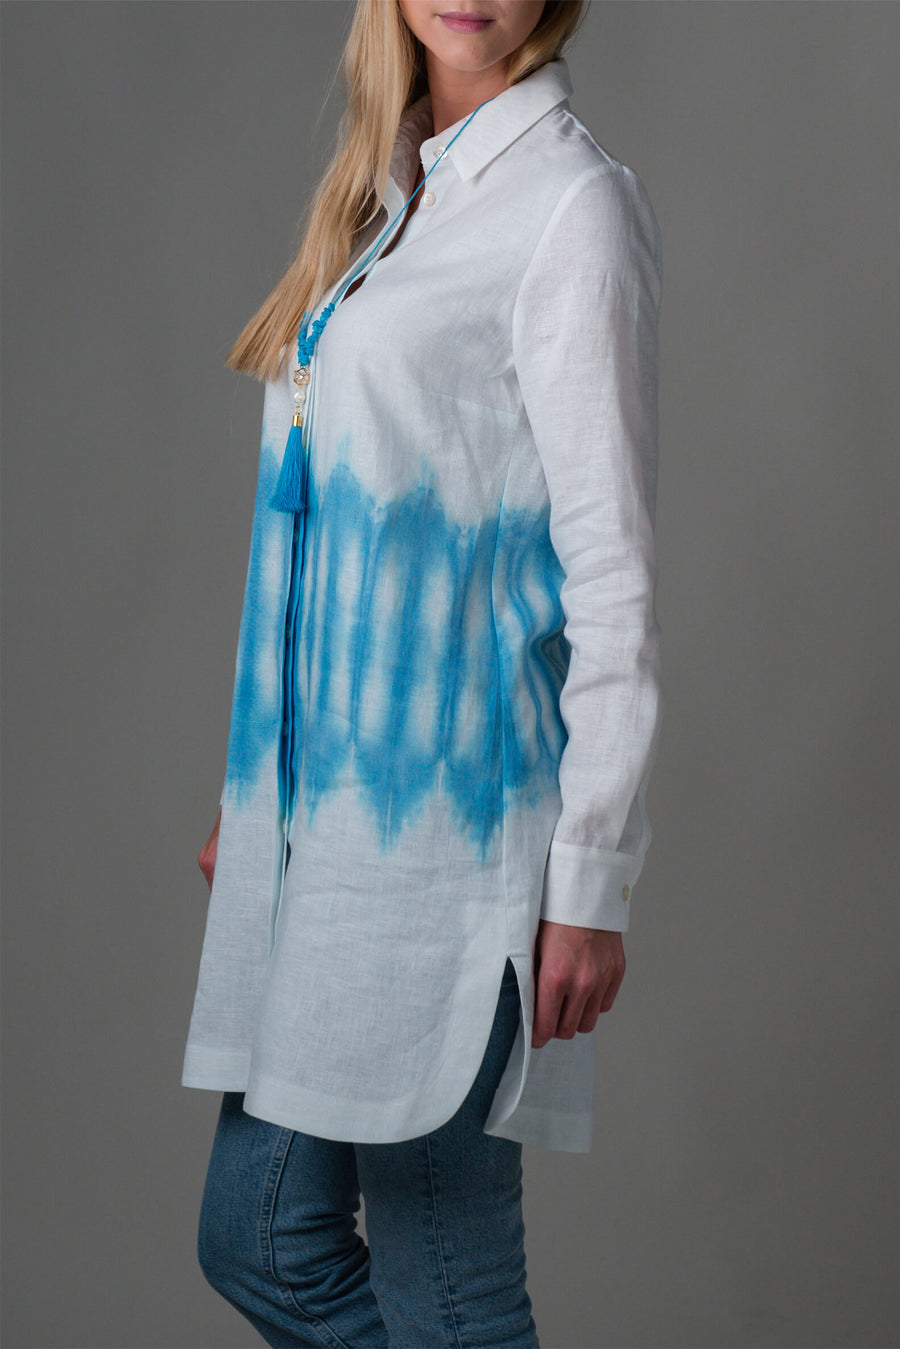 Bela lanena srajca z modrim tiskom je primerna za na plažo ali sprehod skozi mesto, ter je del unikatne kolekcije Ta'Shi